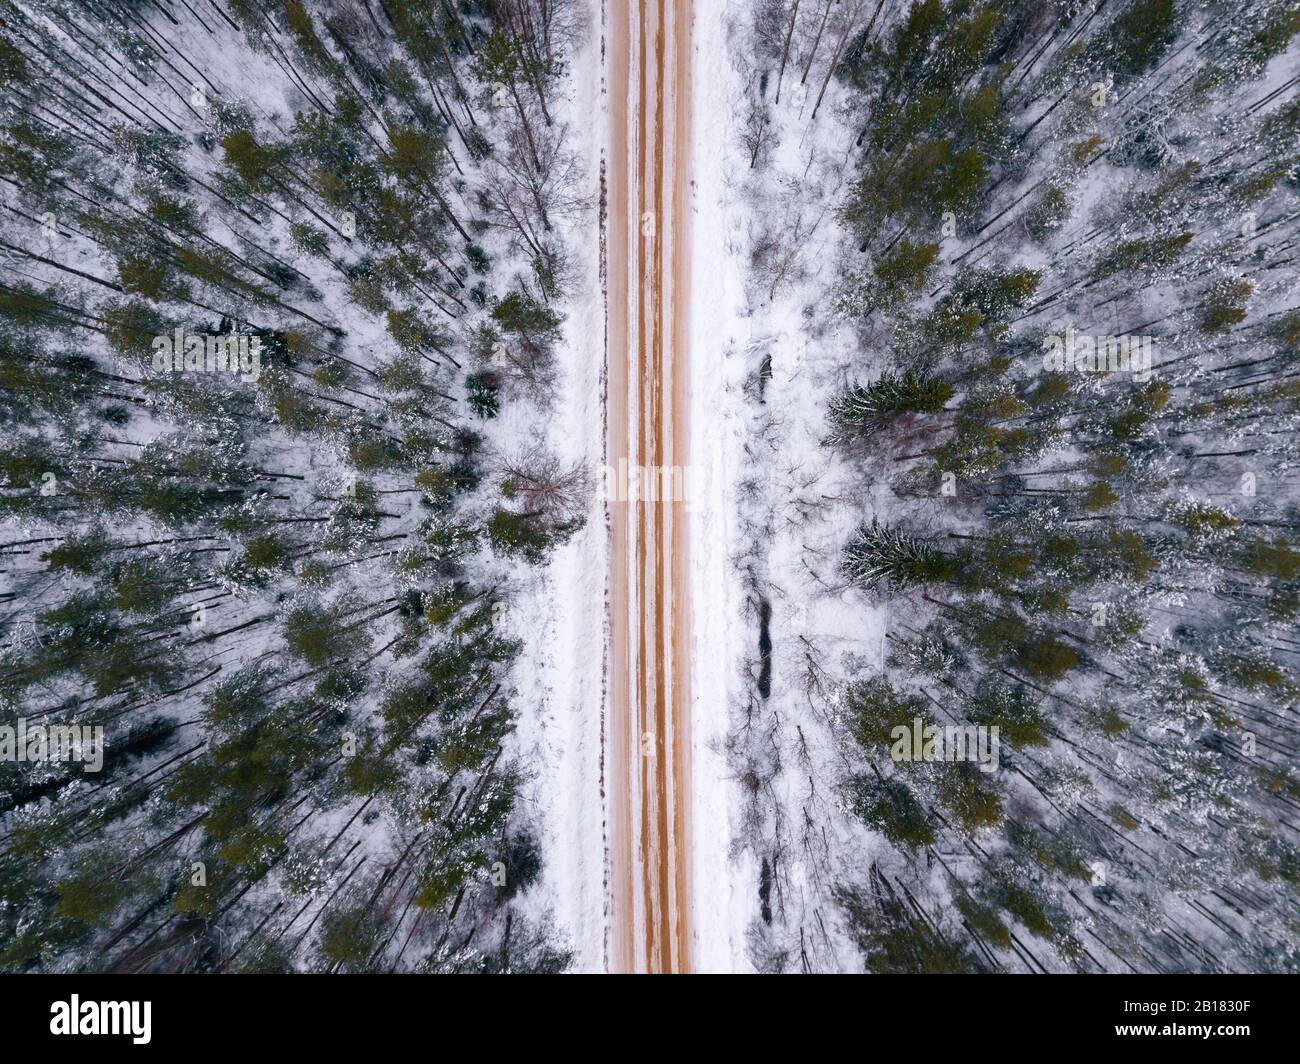 Russia, regione di Leningrado, veduta aerea della foresta che attraversa la strada in inverno Foto Stock